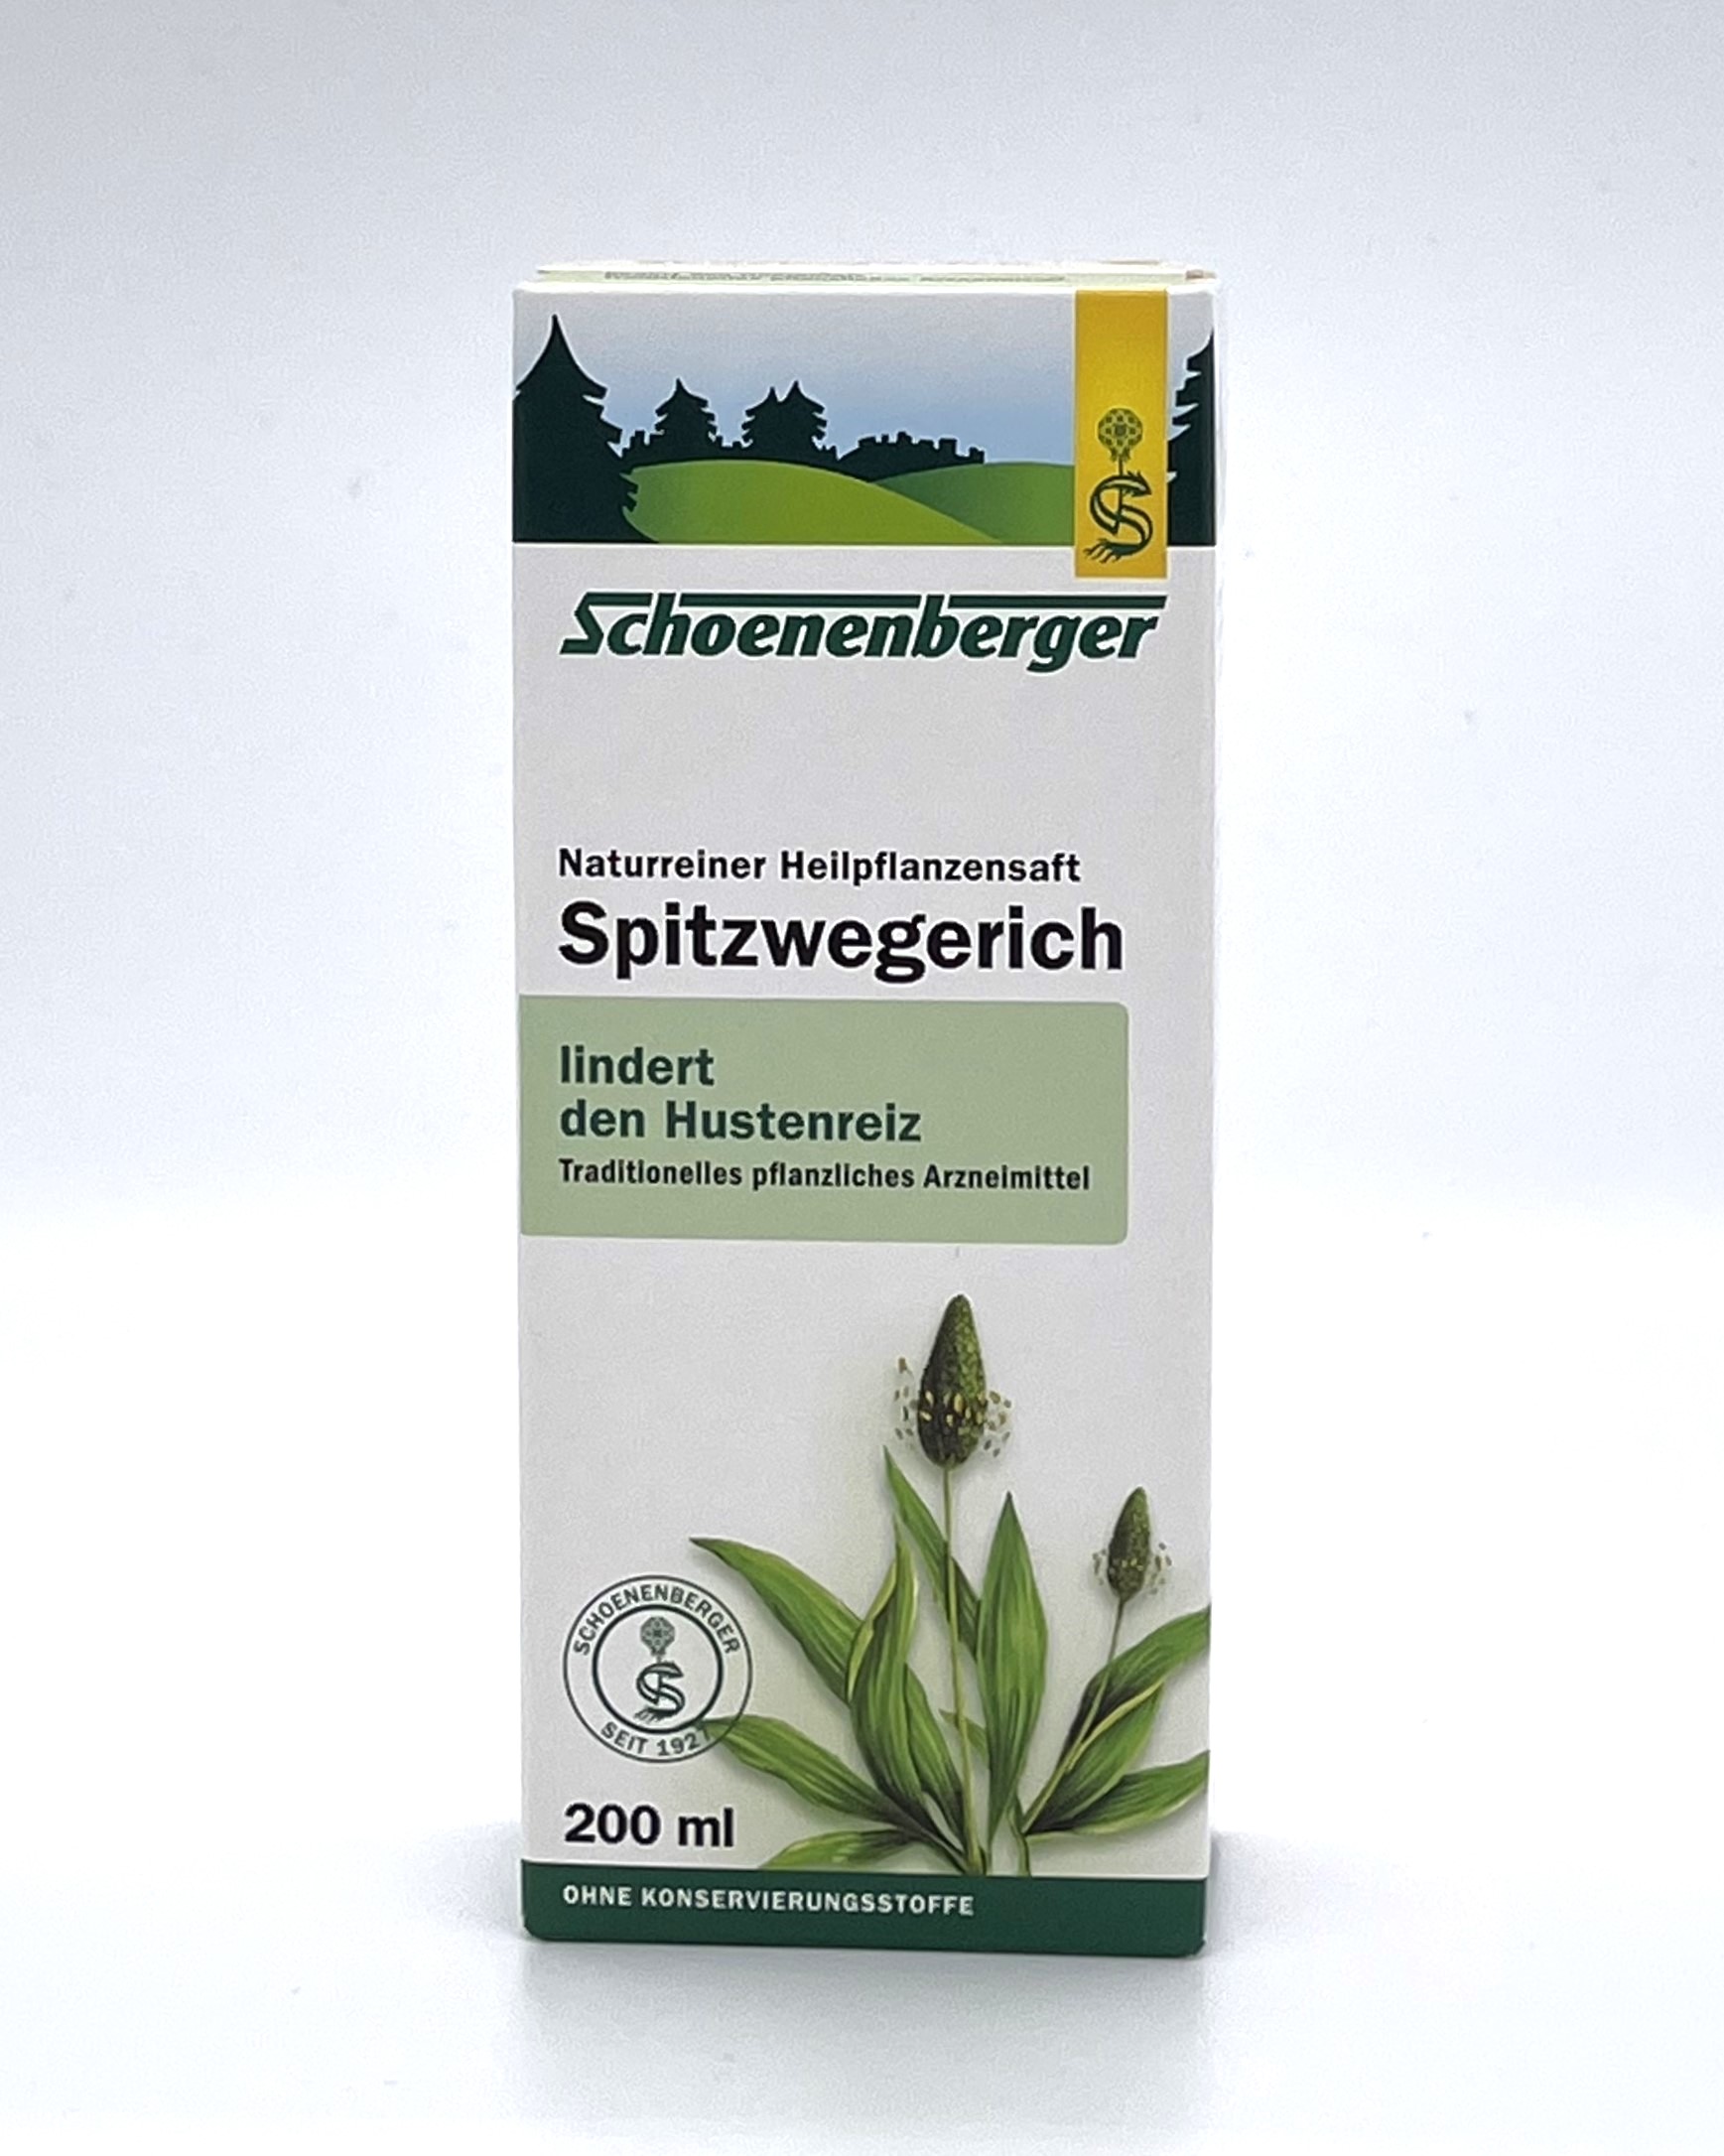 Schoenenberger Spitzwegerich Naturreiner Heilpflanzensaft  